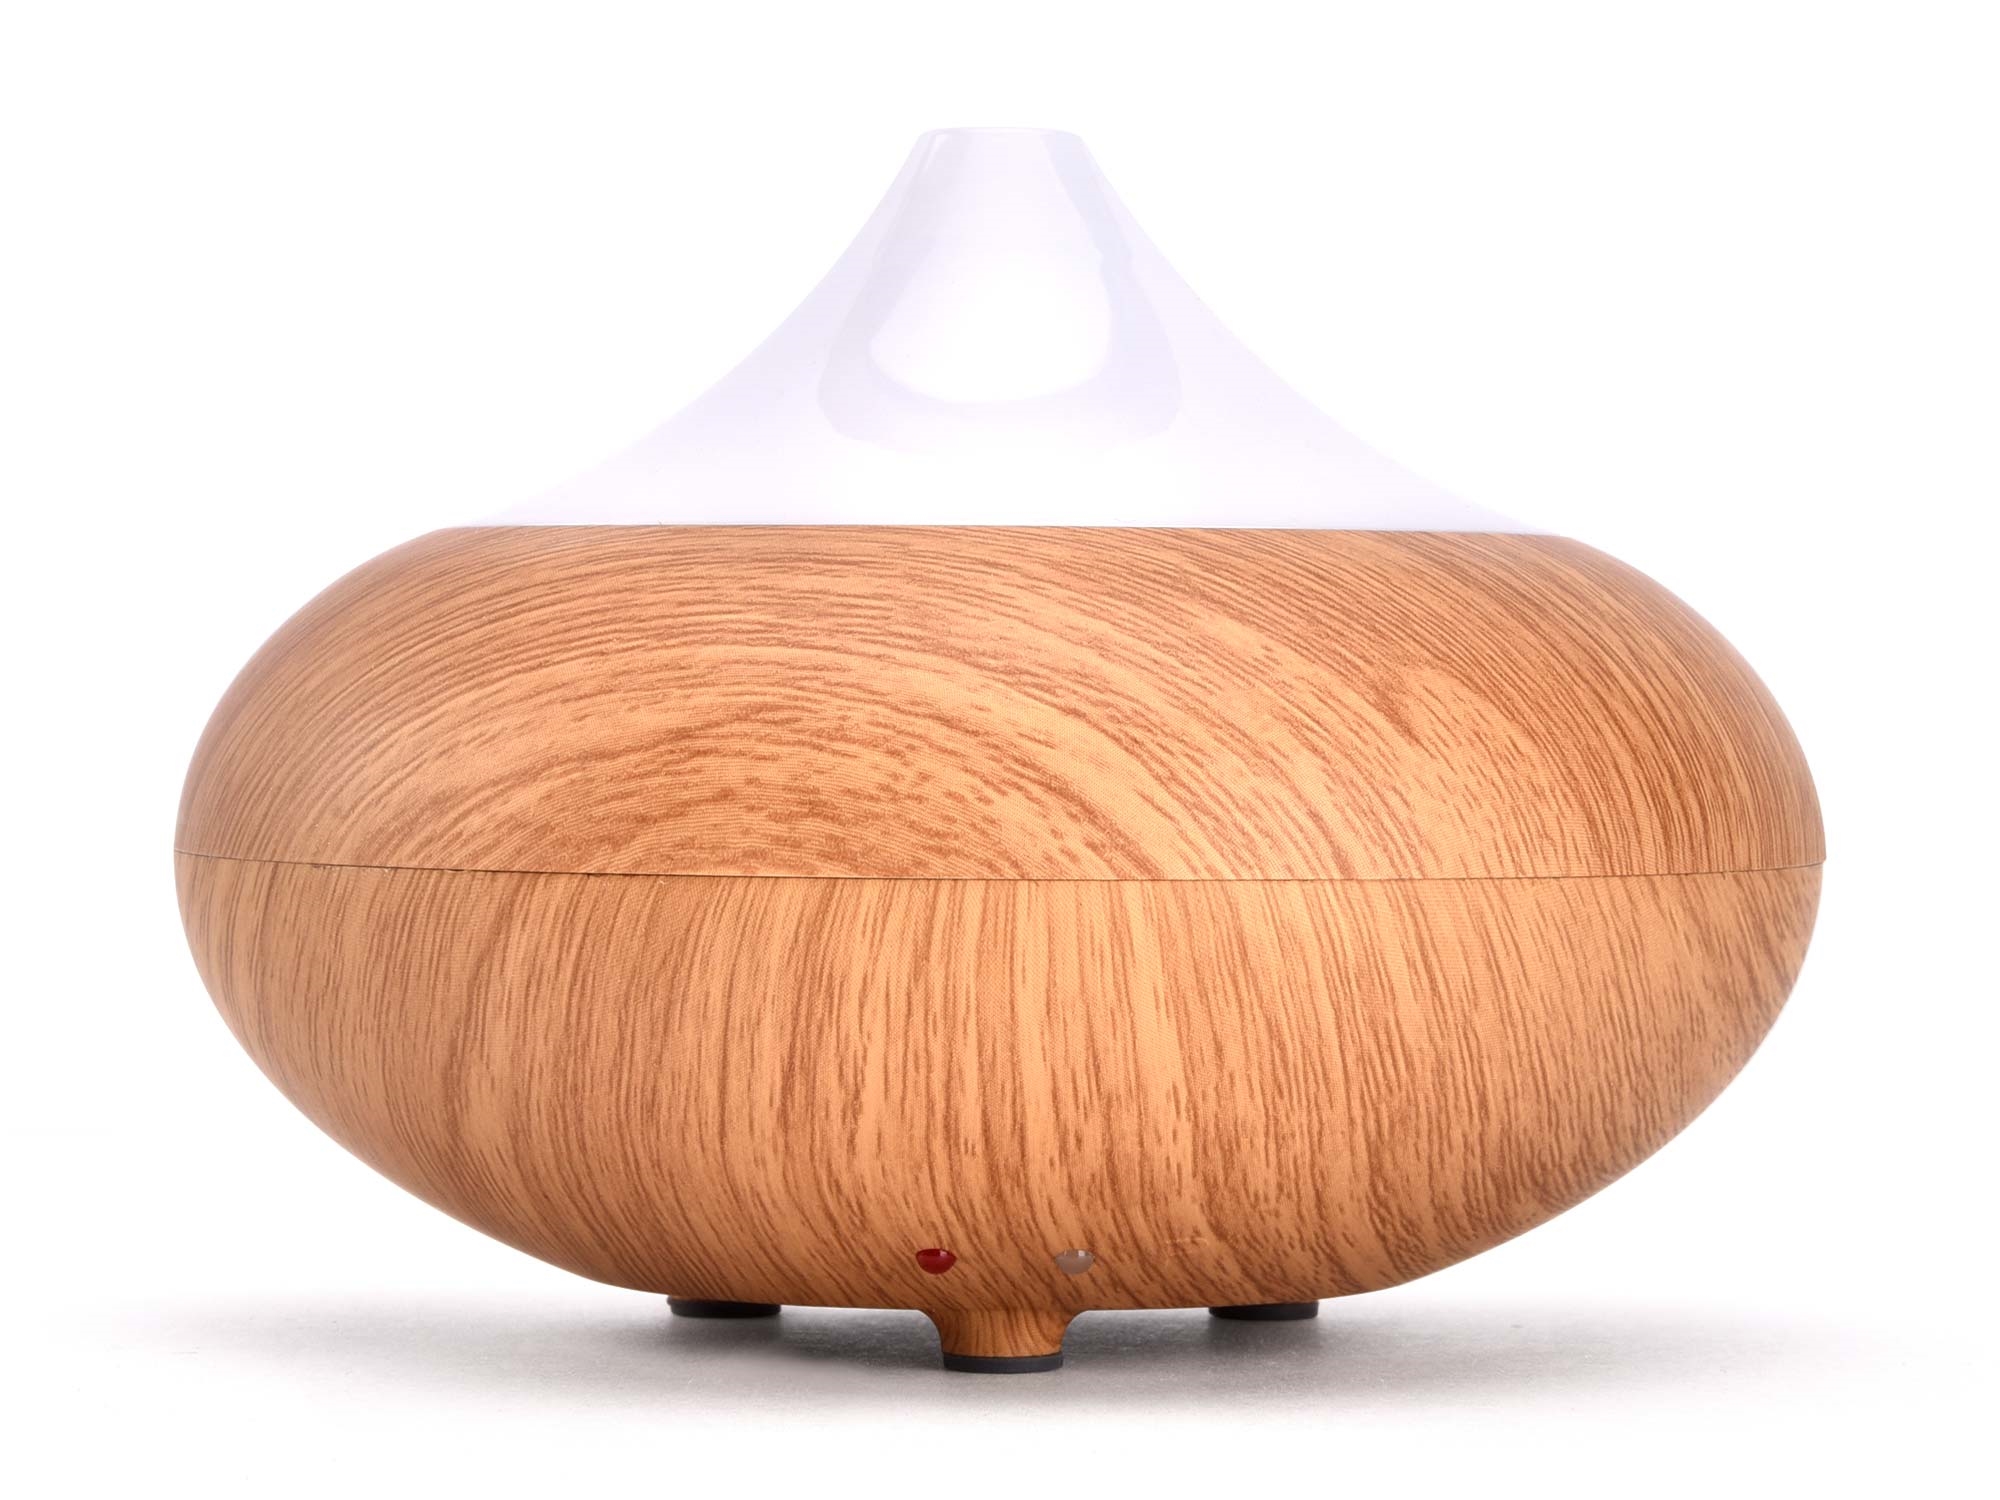 POŠK. OBAL aroma difuzér Fuji, osvěžovač a zvlhčovač vzduchu, imitace světlého dřeva, 150ml